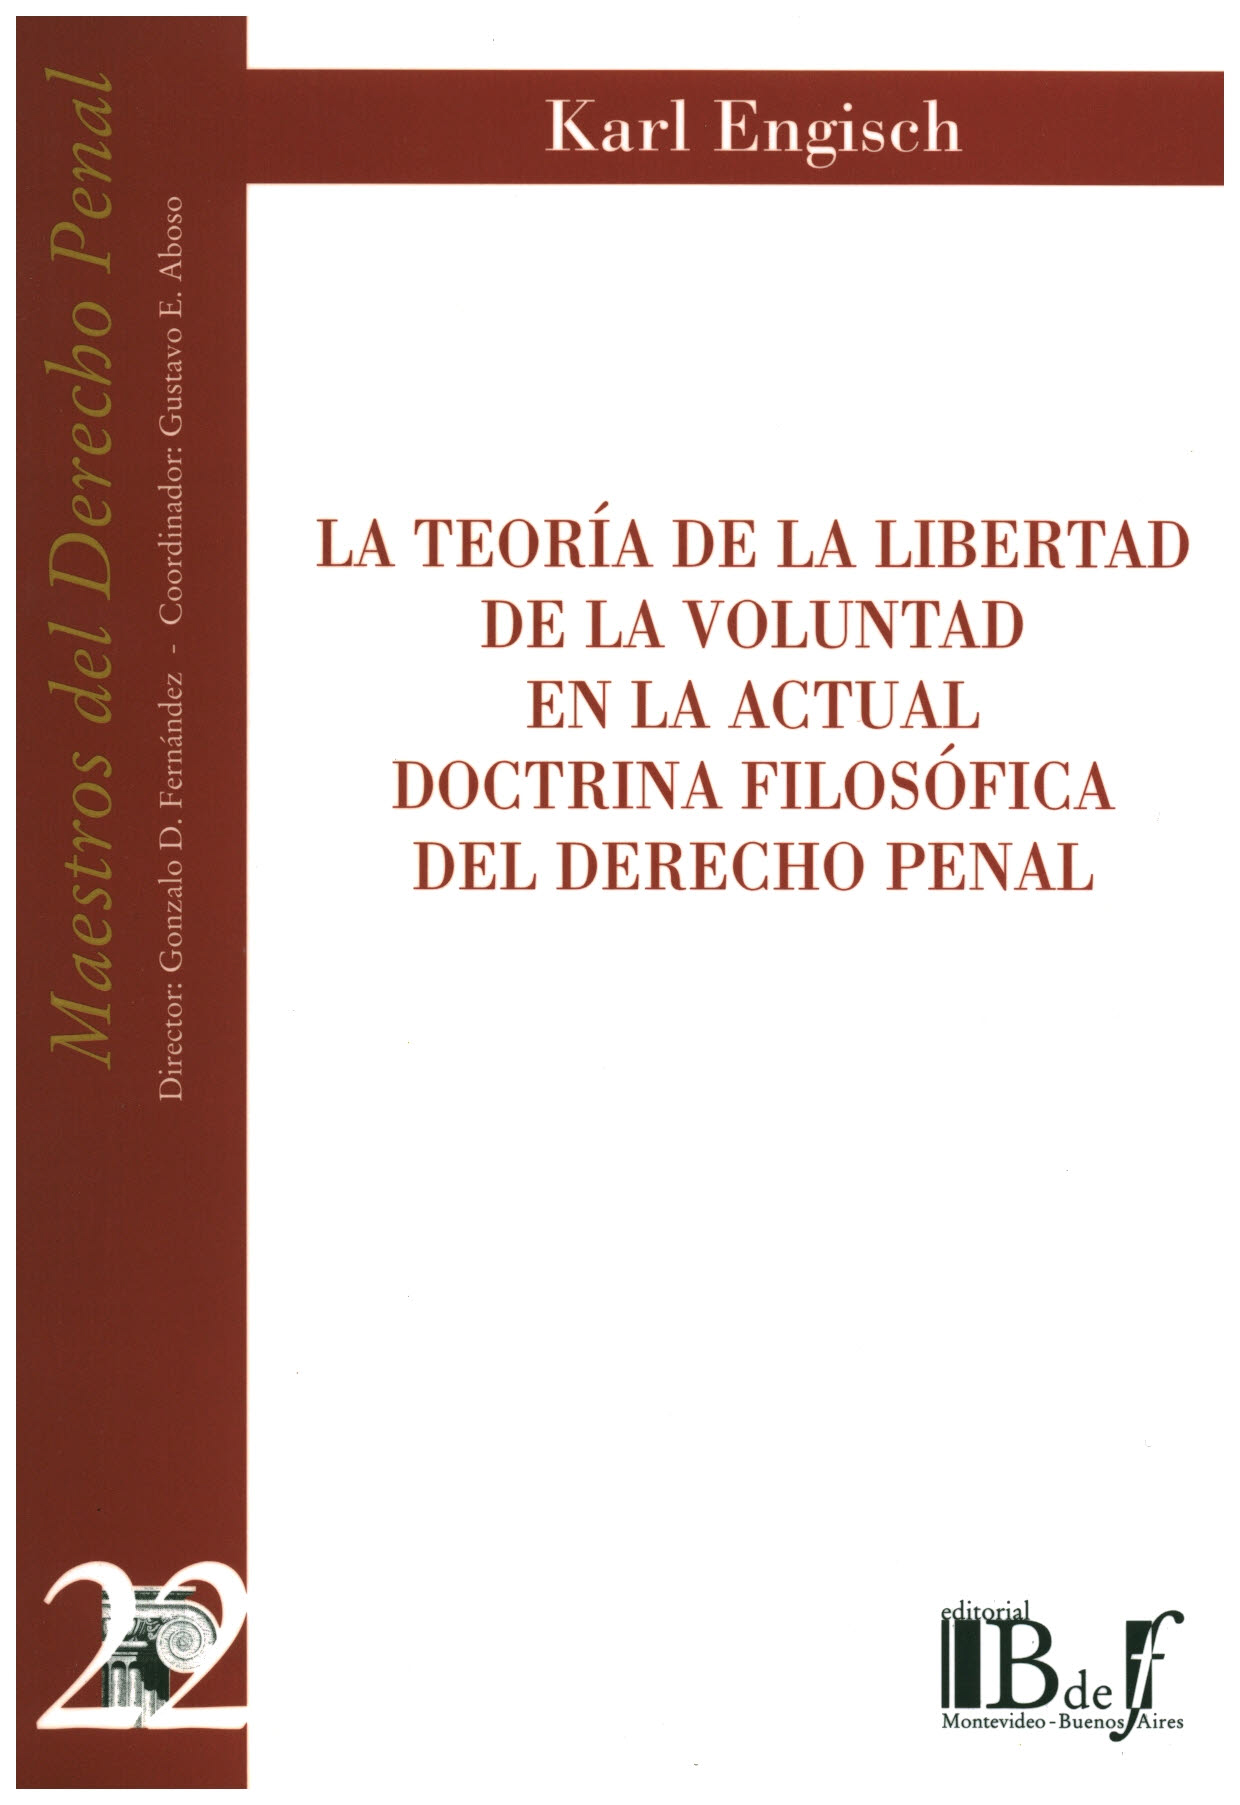 La teoría de la libertad de la voluntad en la actual doctrina filosófica del derecho penal